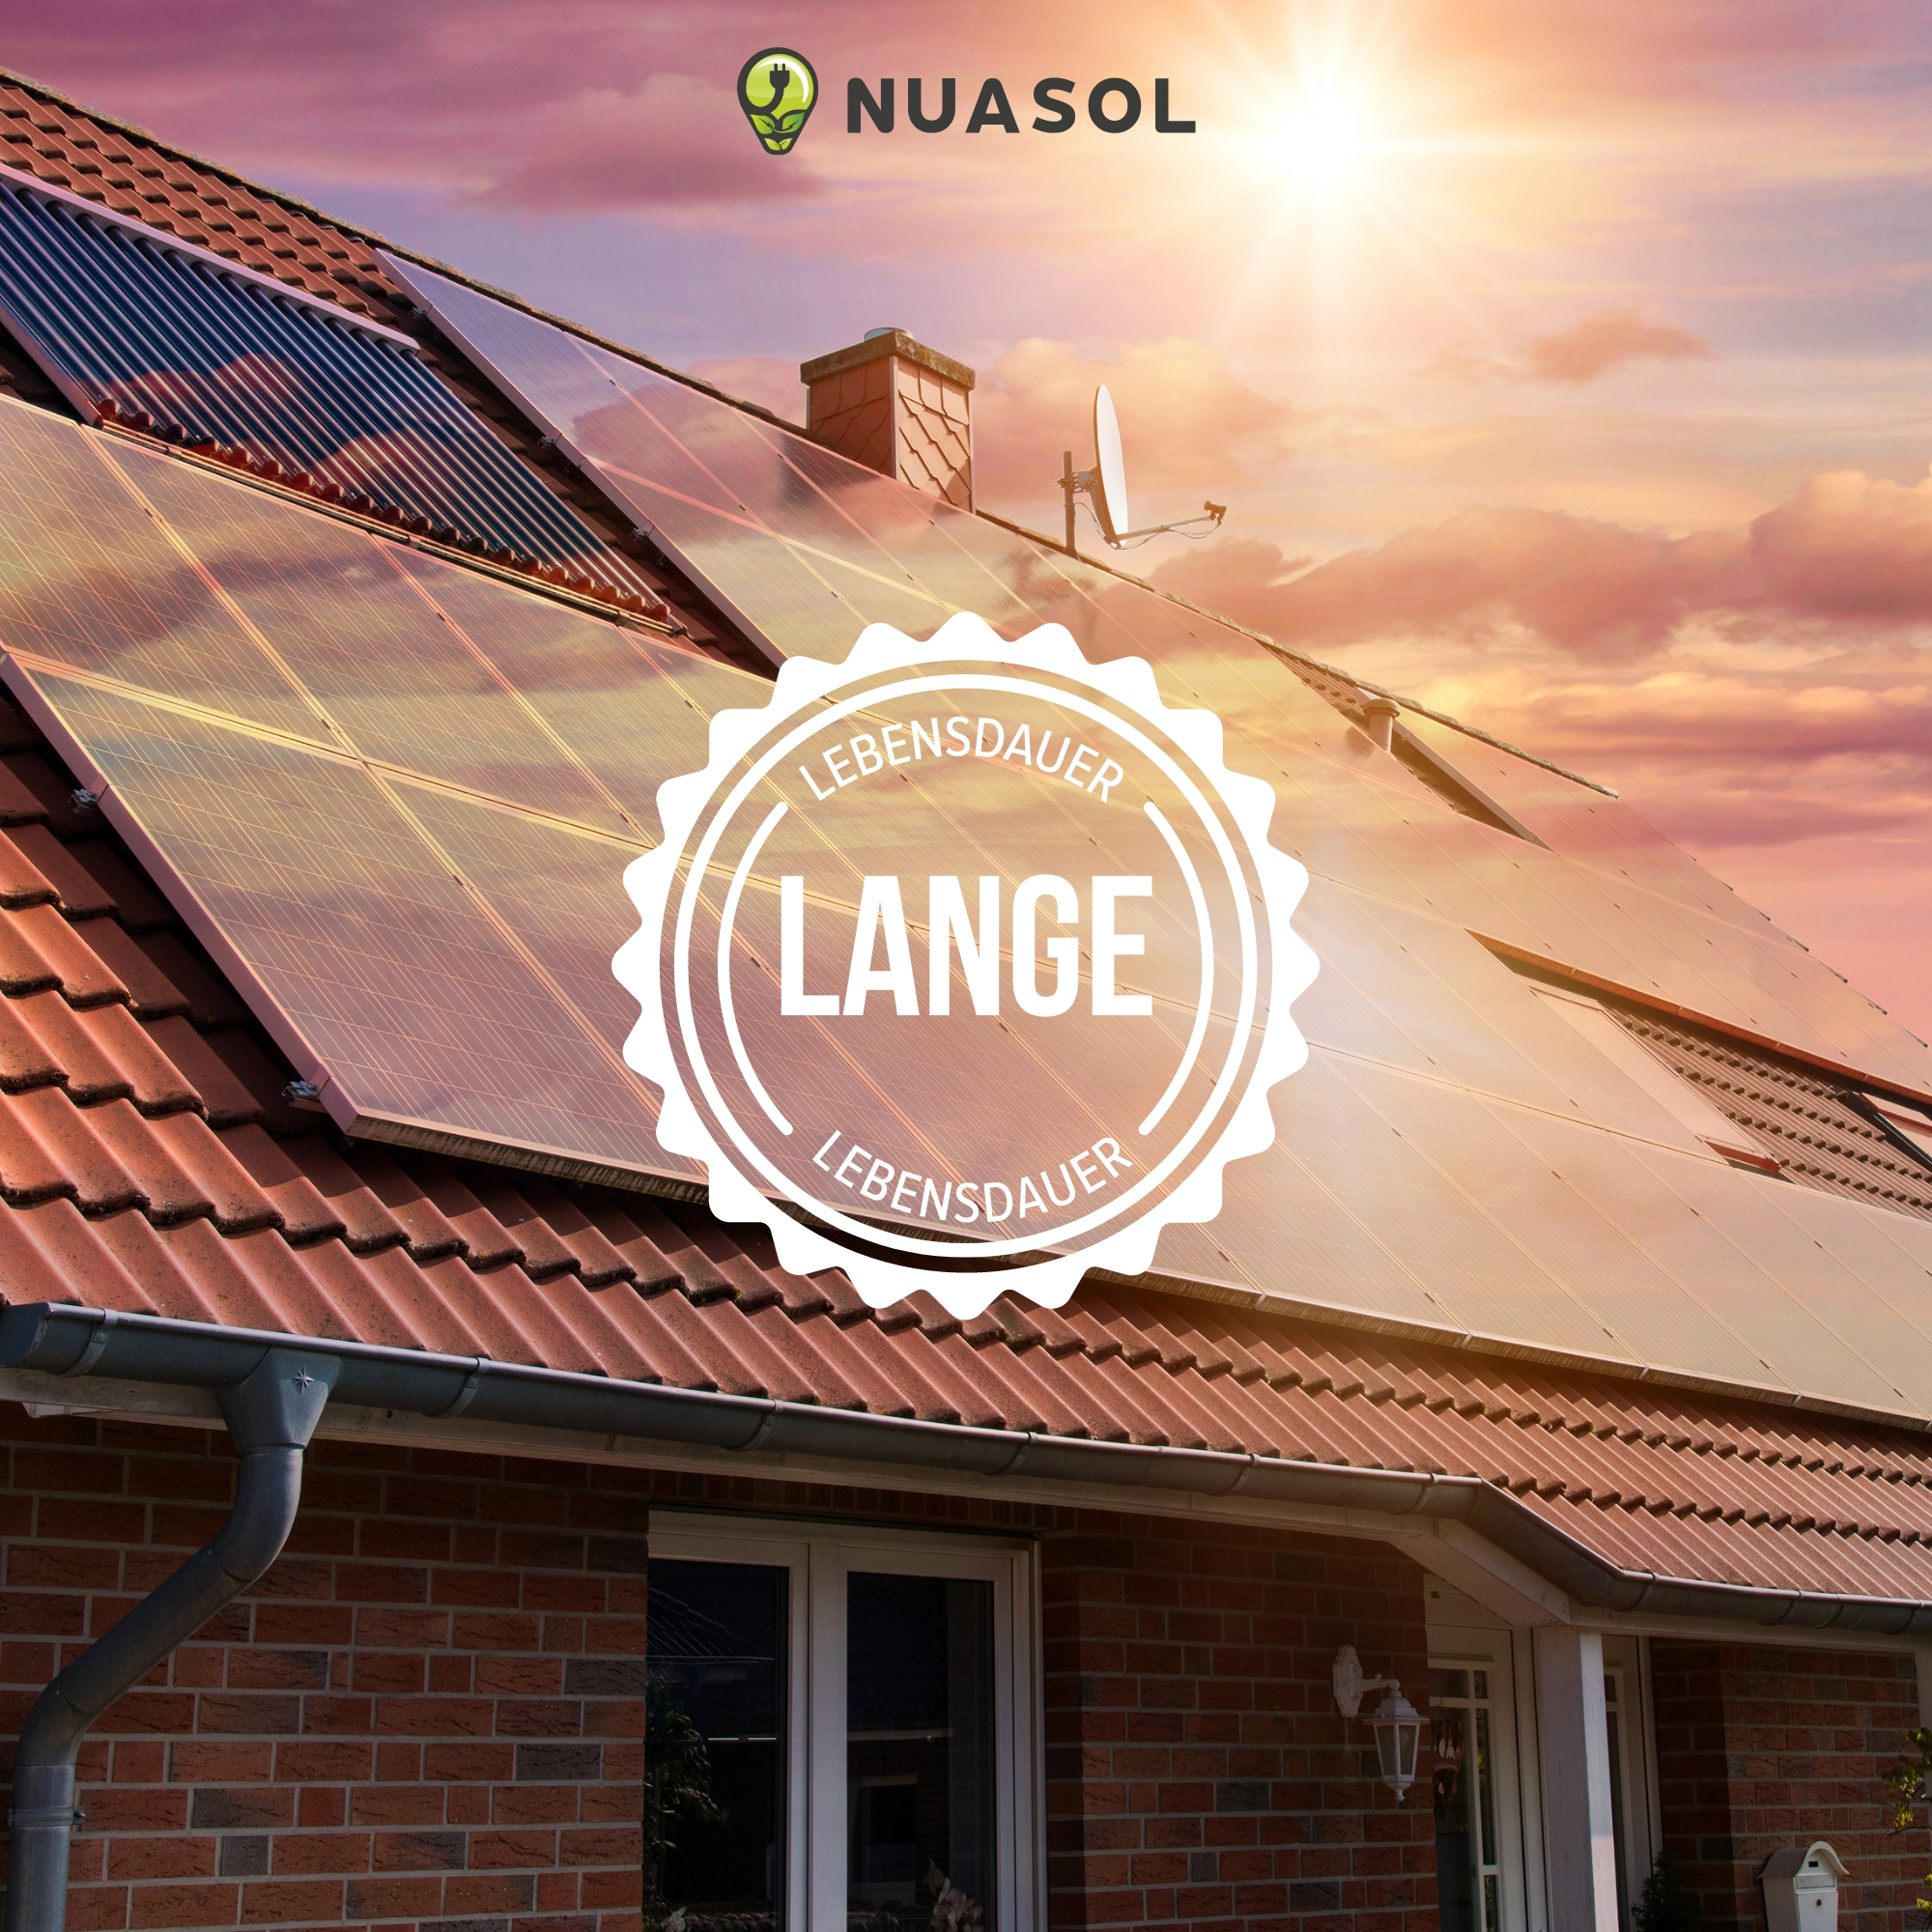 2 Solarmodule Dachmontage-Set Halterung, NUASOL silber für